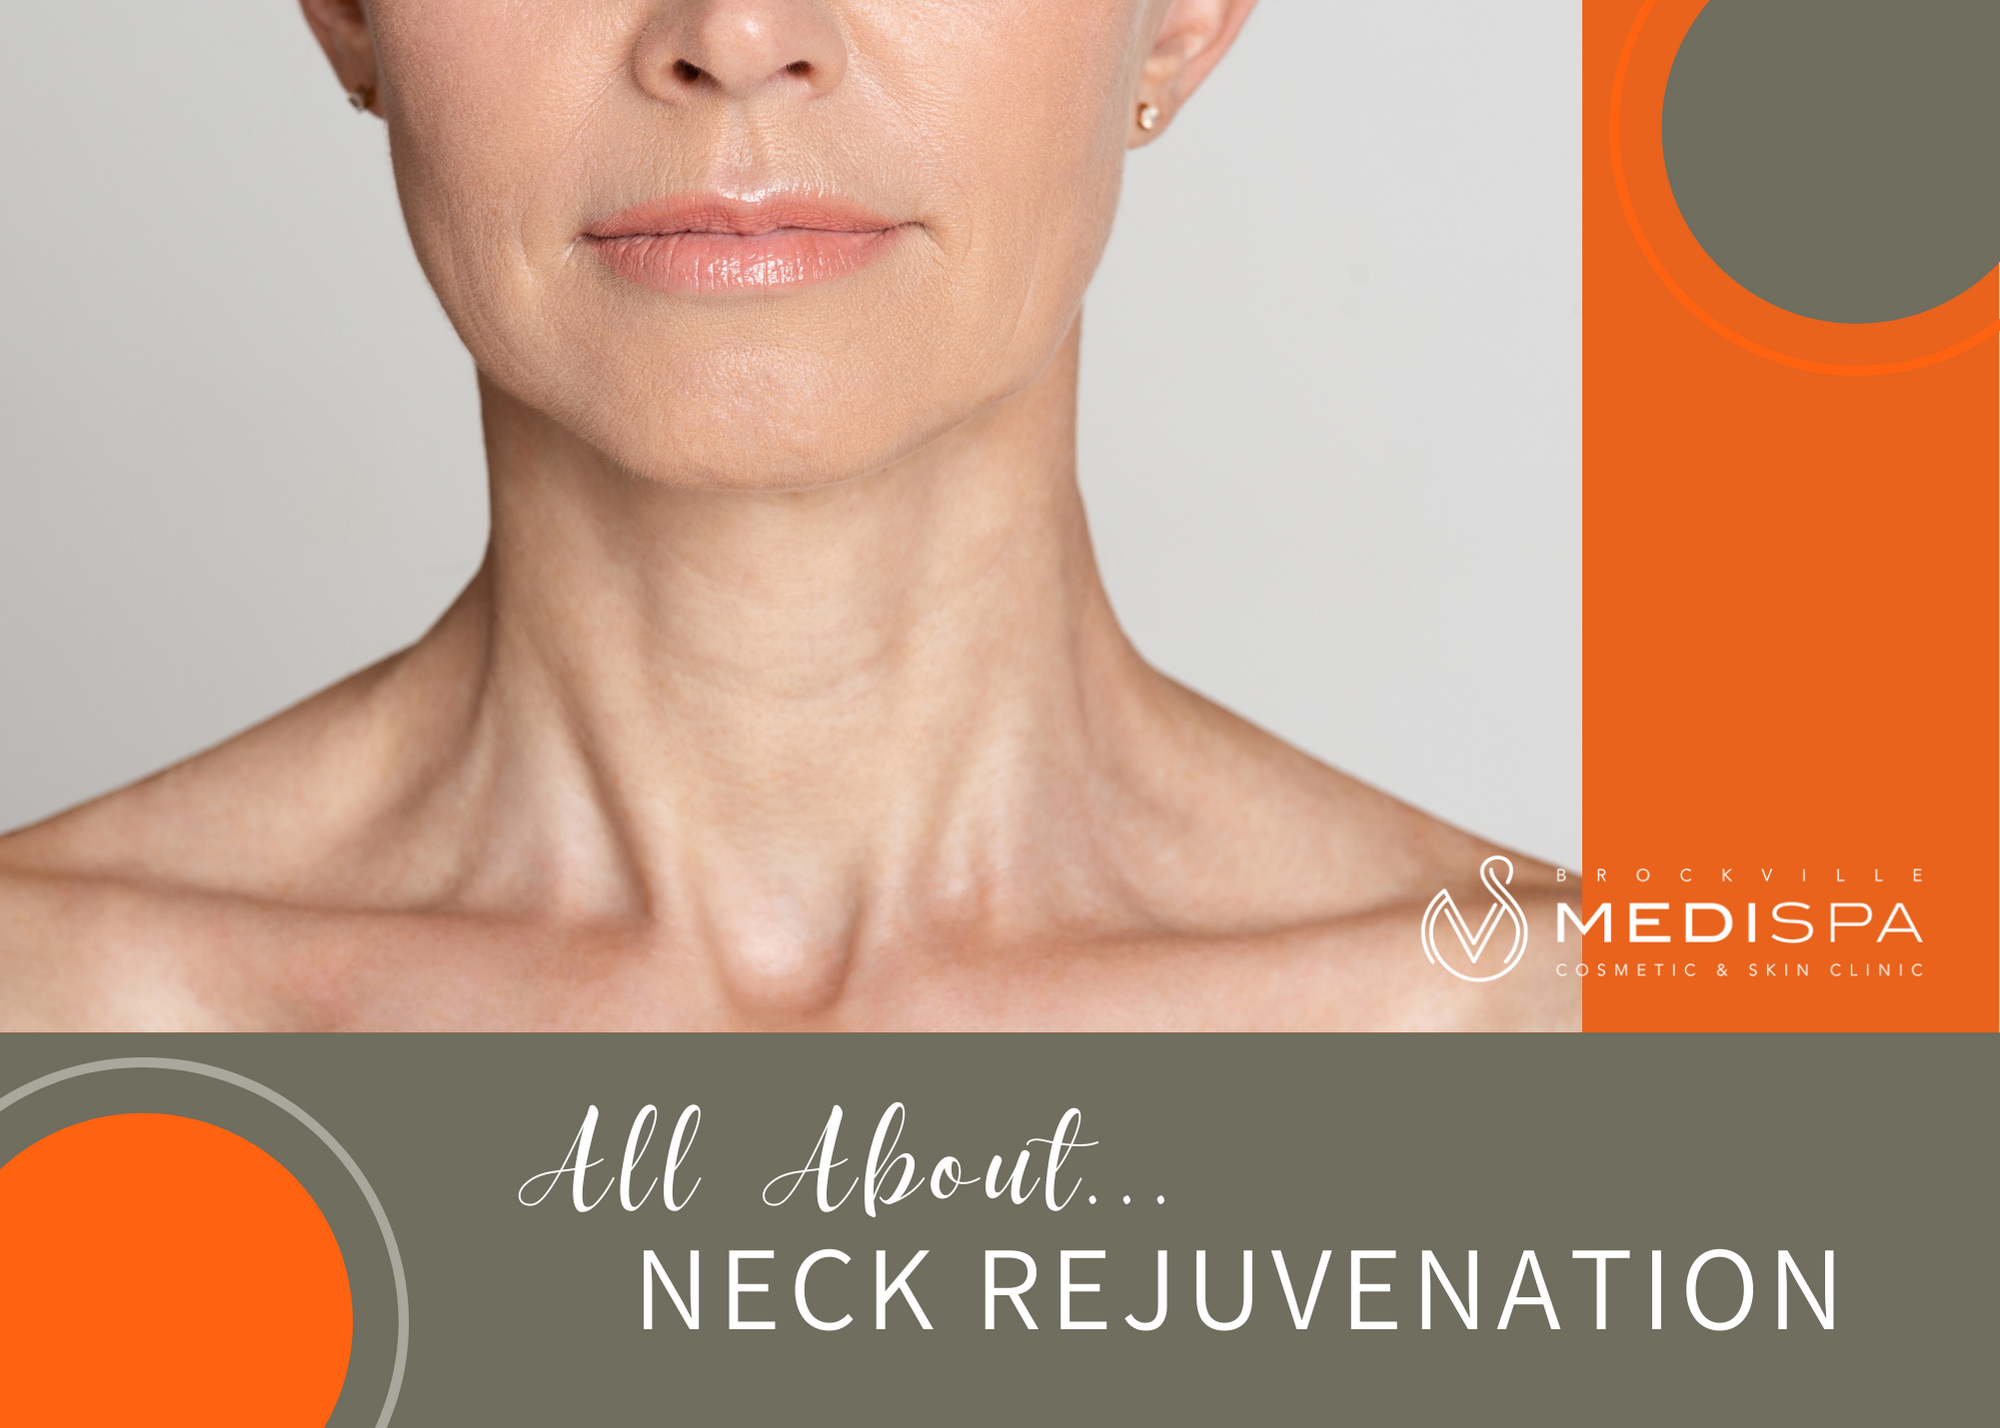 Non surgical neck rejuvenation